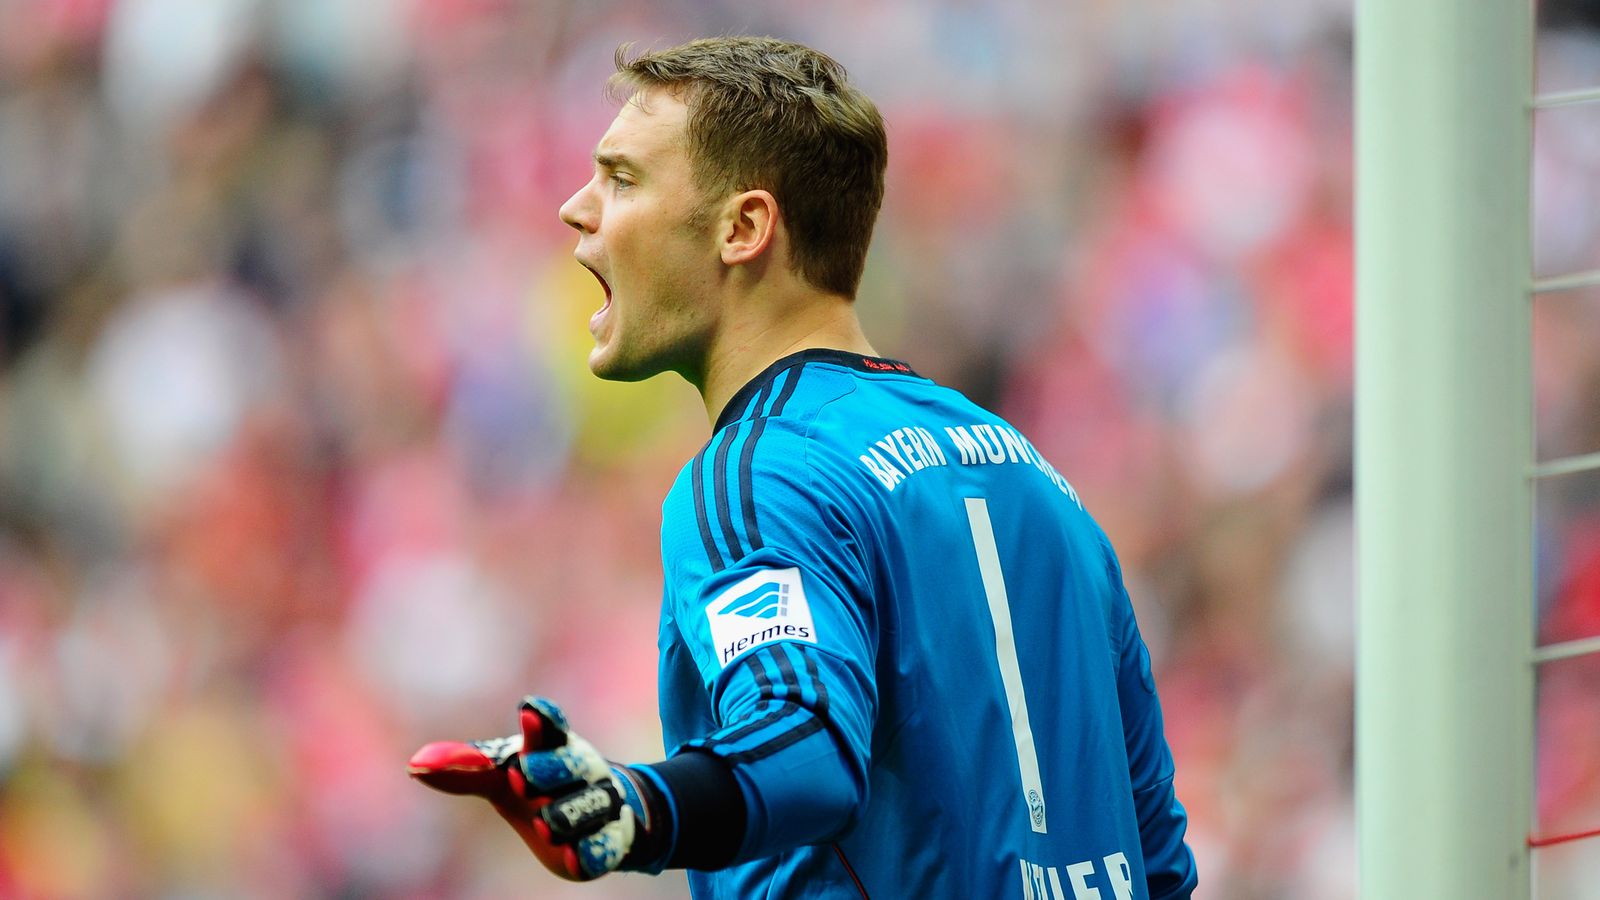 Manuel Neuer calf injury: Bayern Munich's number one is just fine